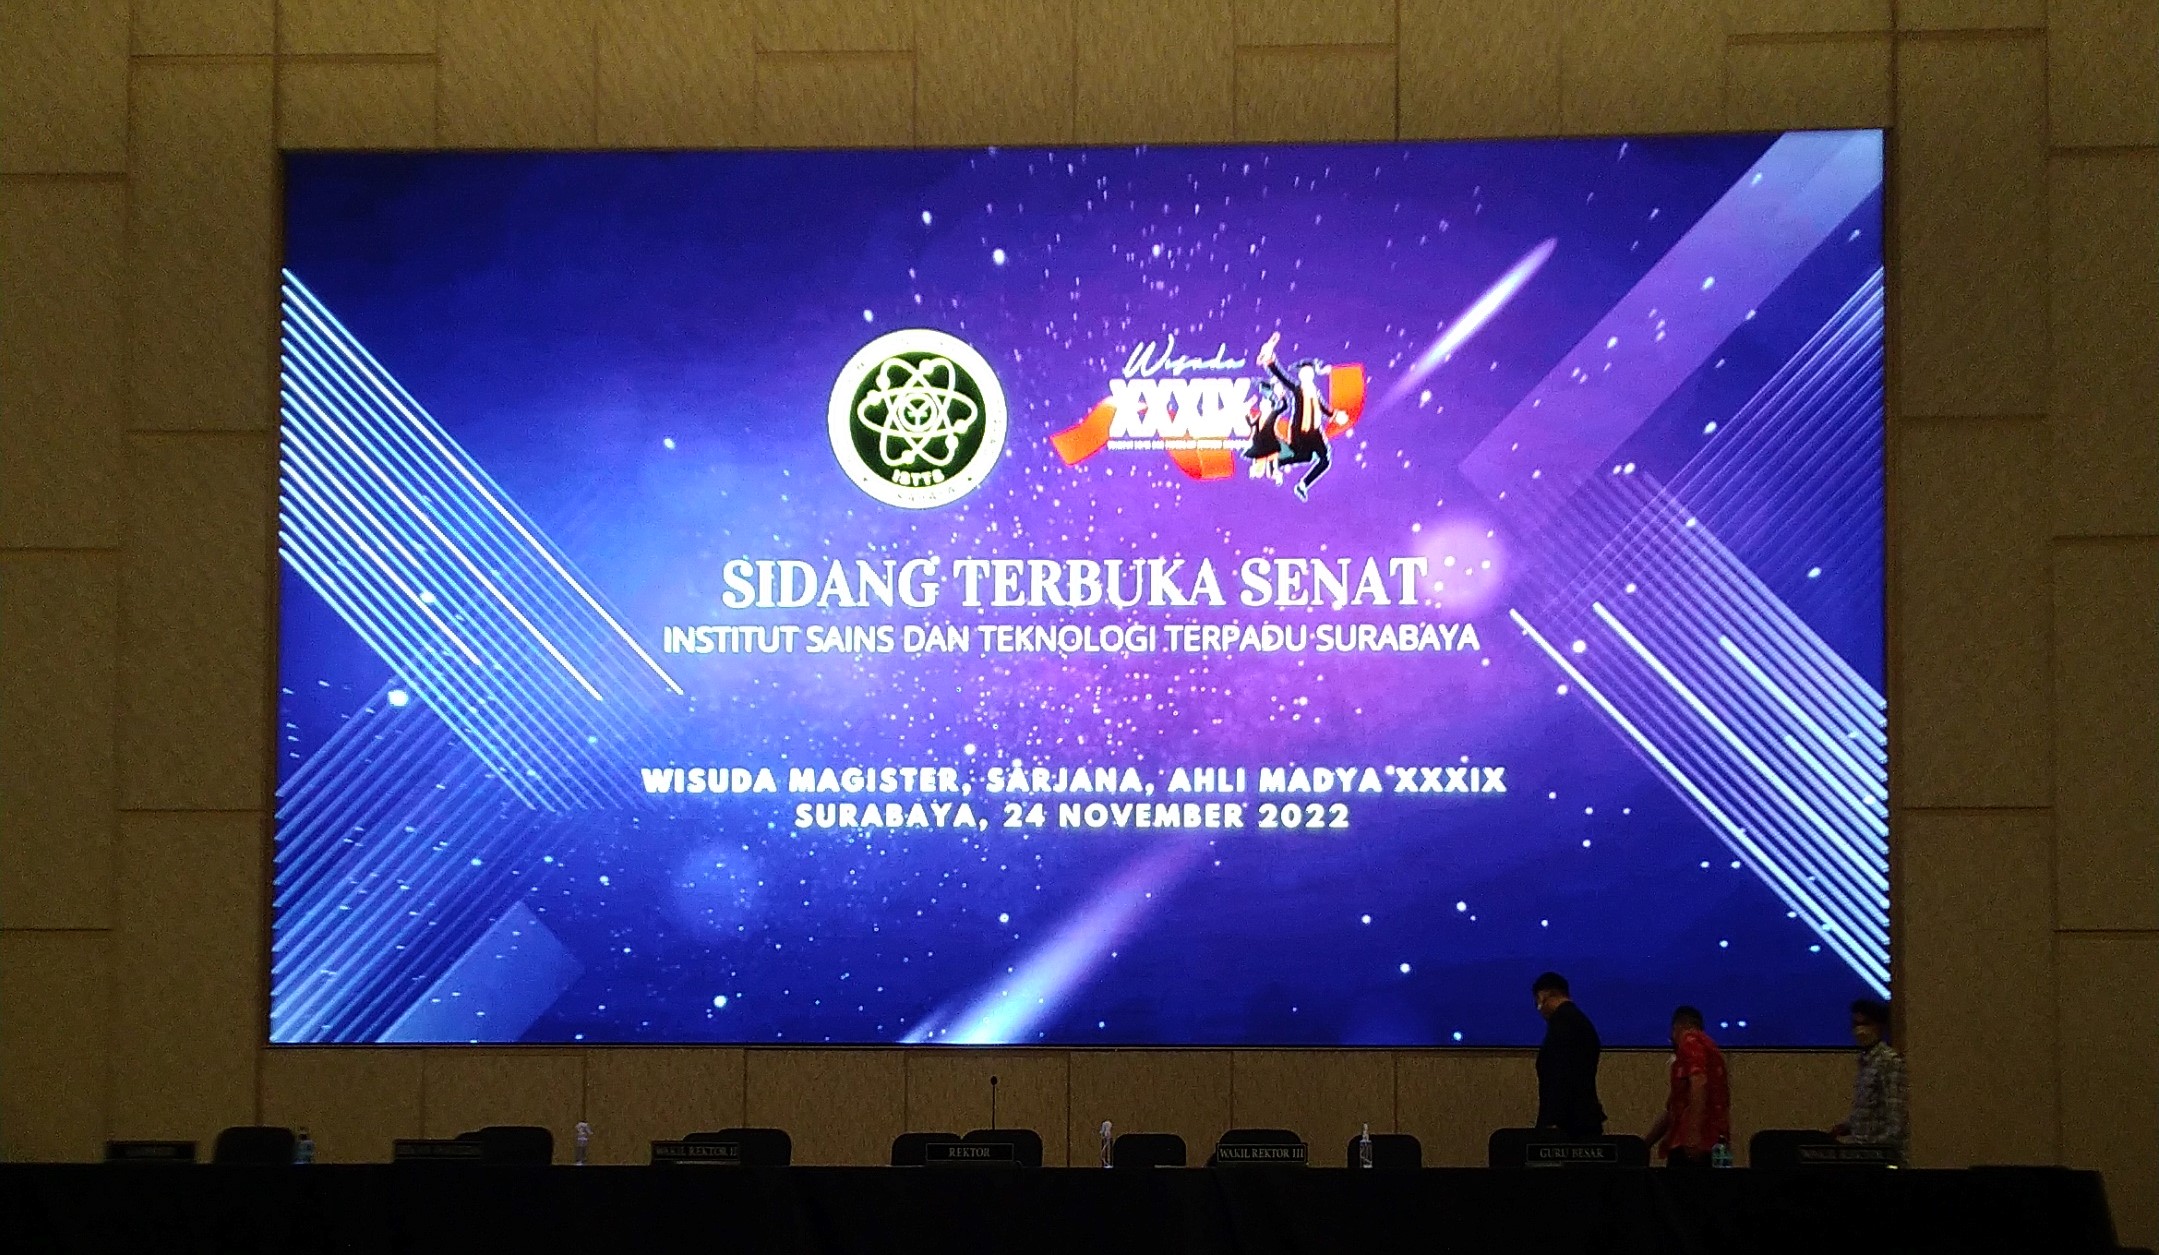 Wisuda XXXIX Institut Sains dan Teknologi Terpadu Surabaya